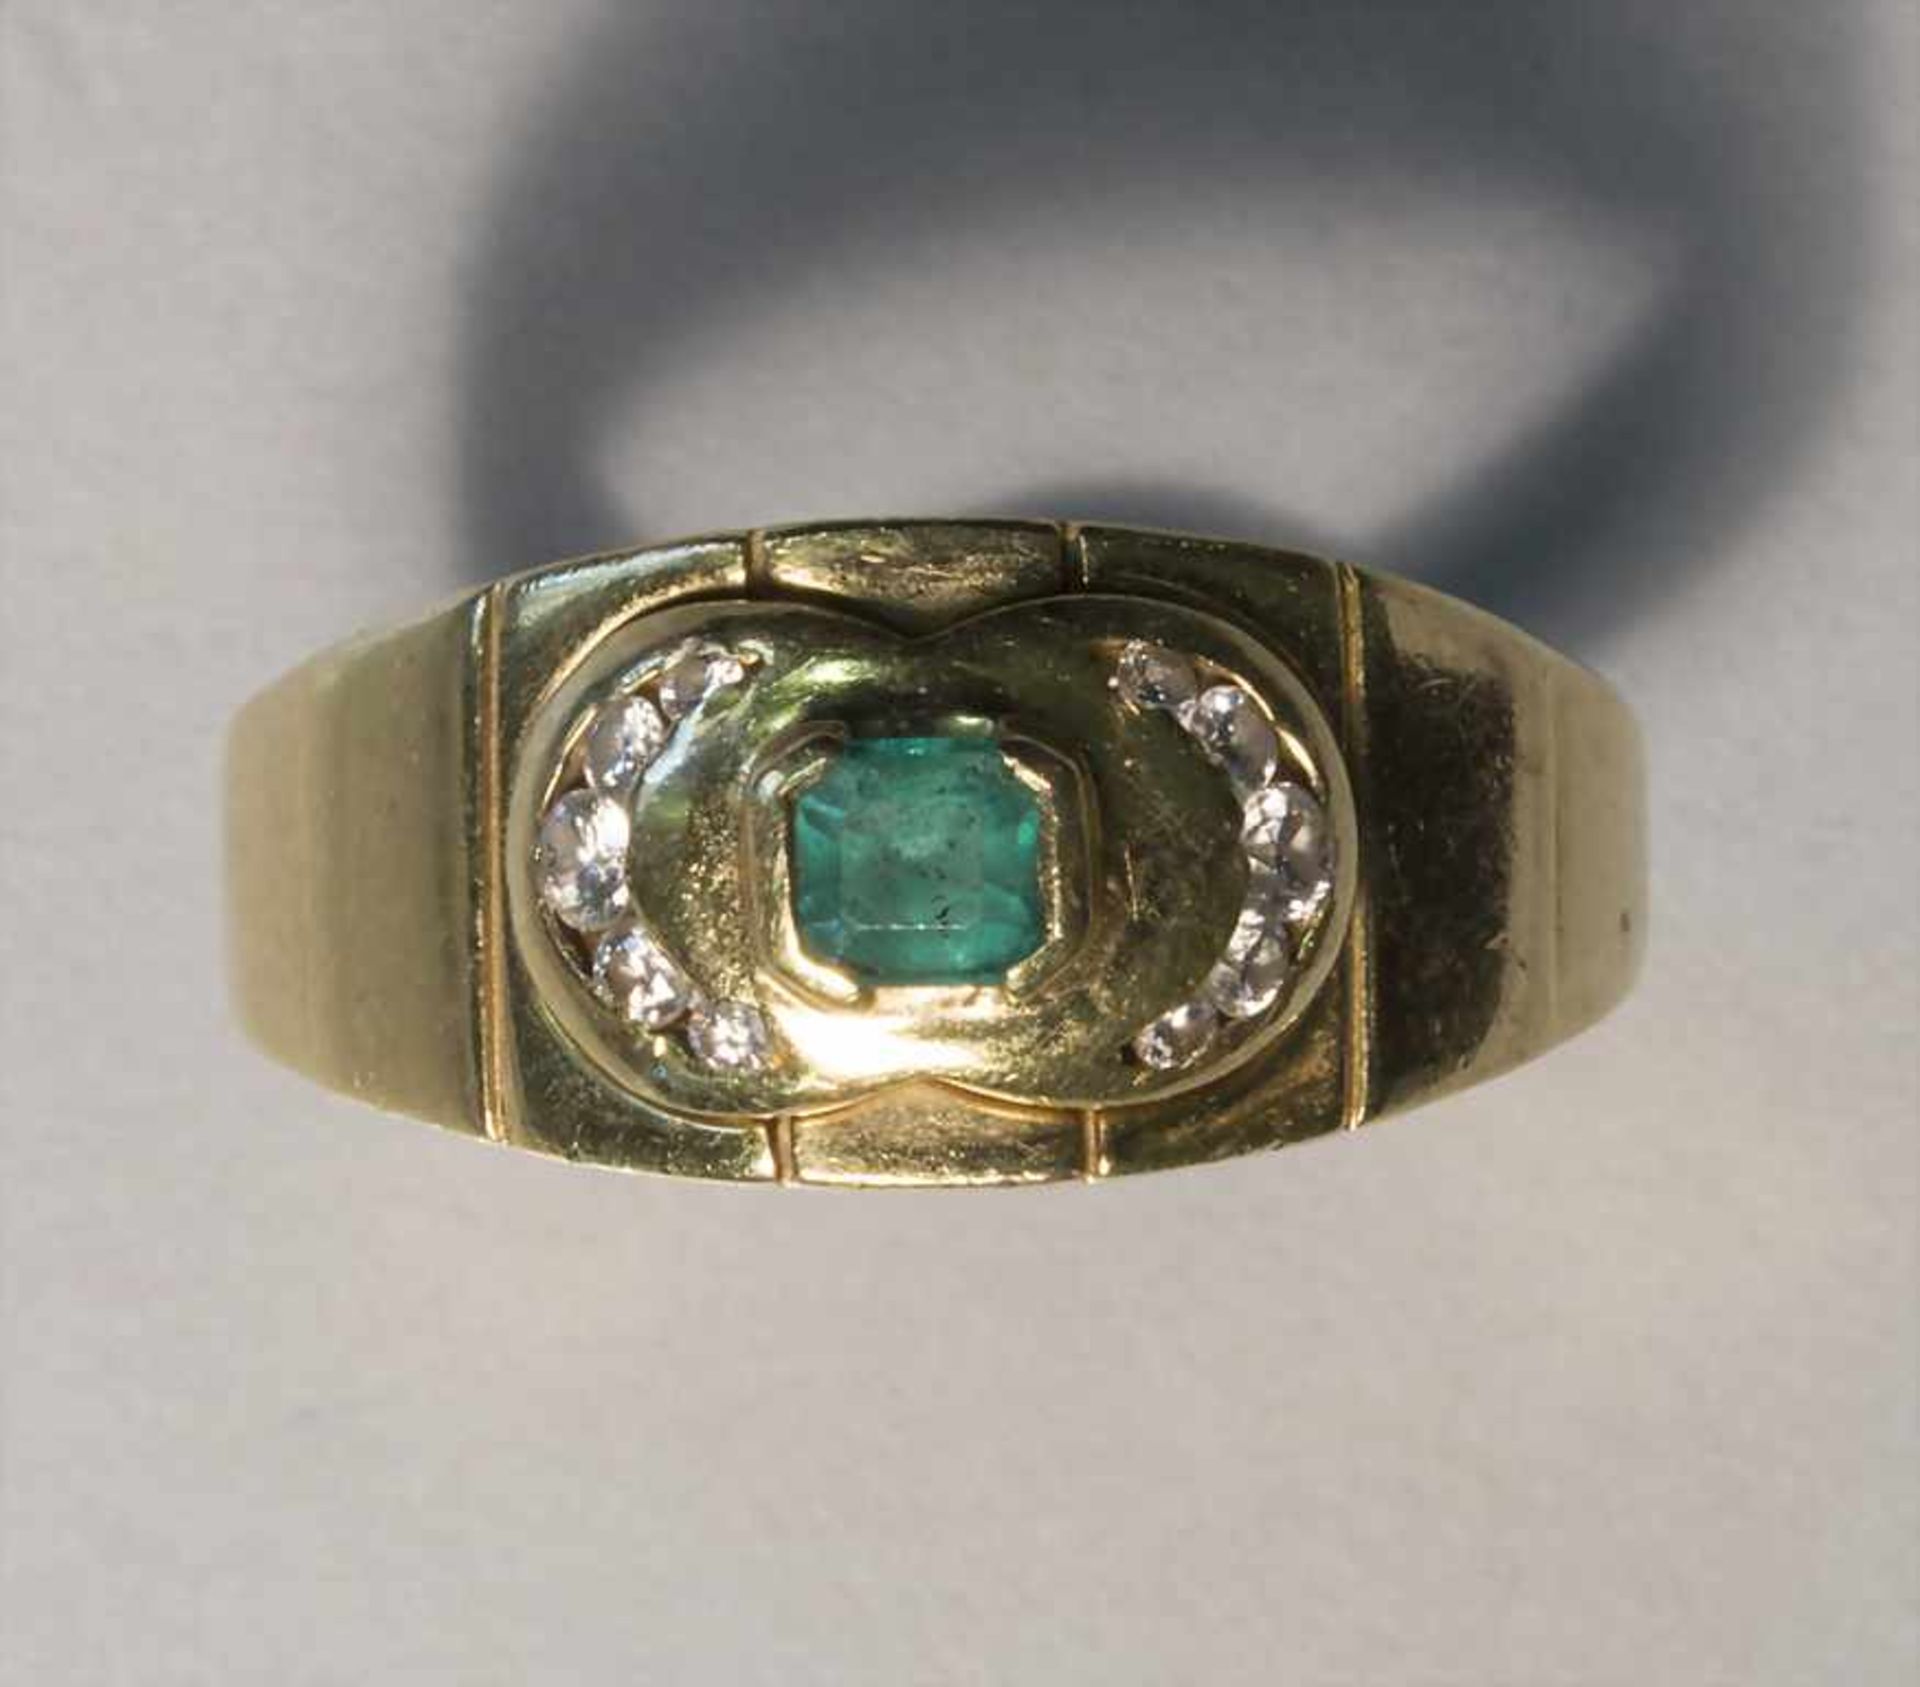 Damenring mit Smaragd und Diamanten / A ladies ring with emerald and diamonds - Bild 2 aus 3